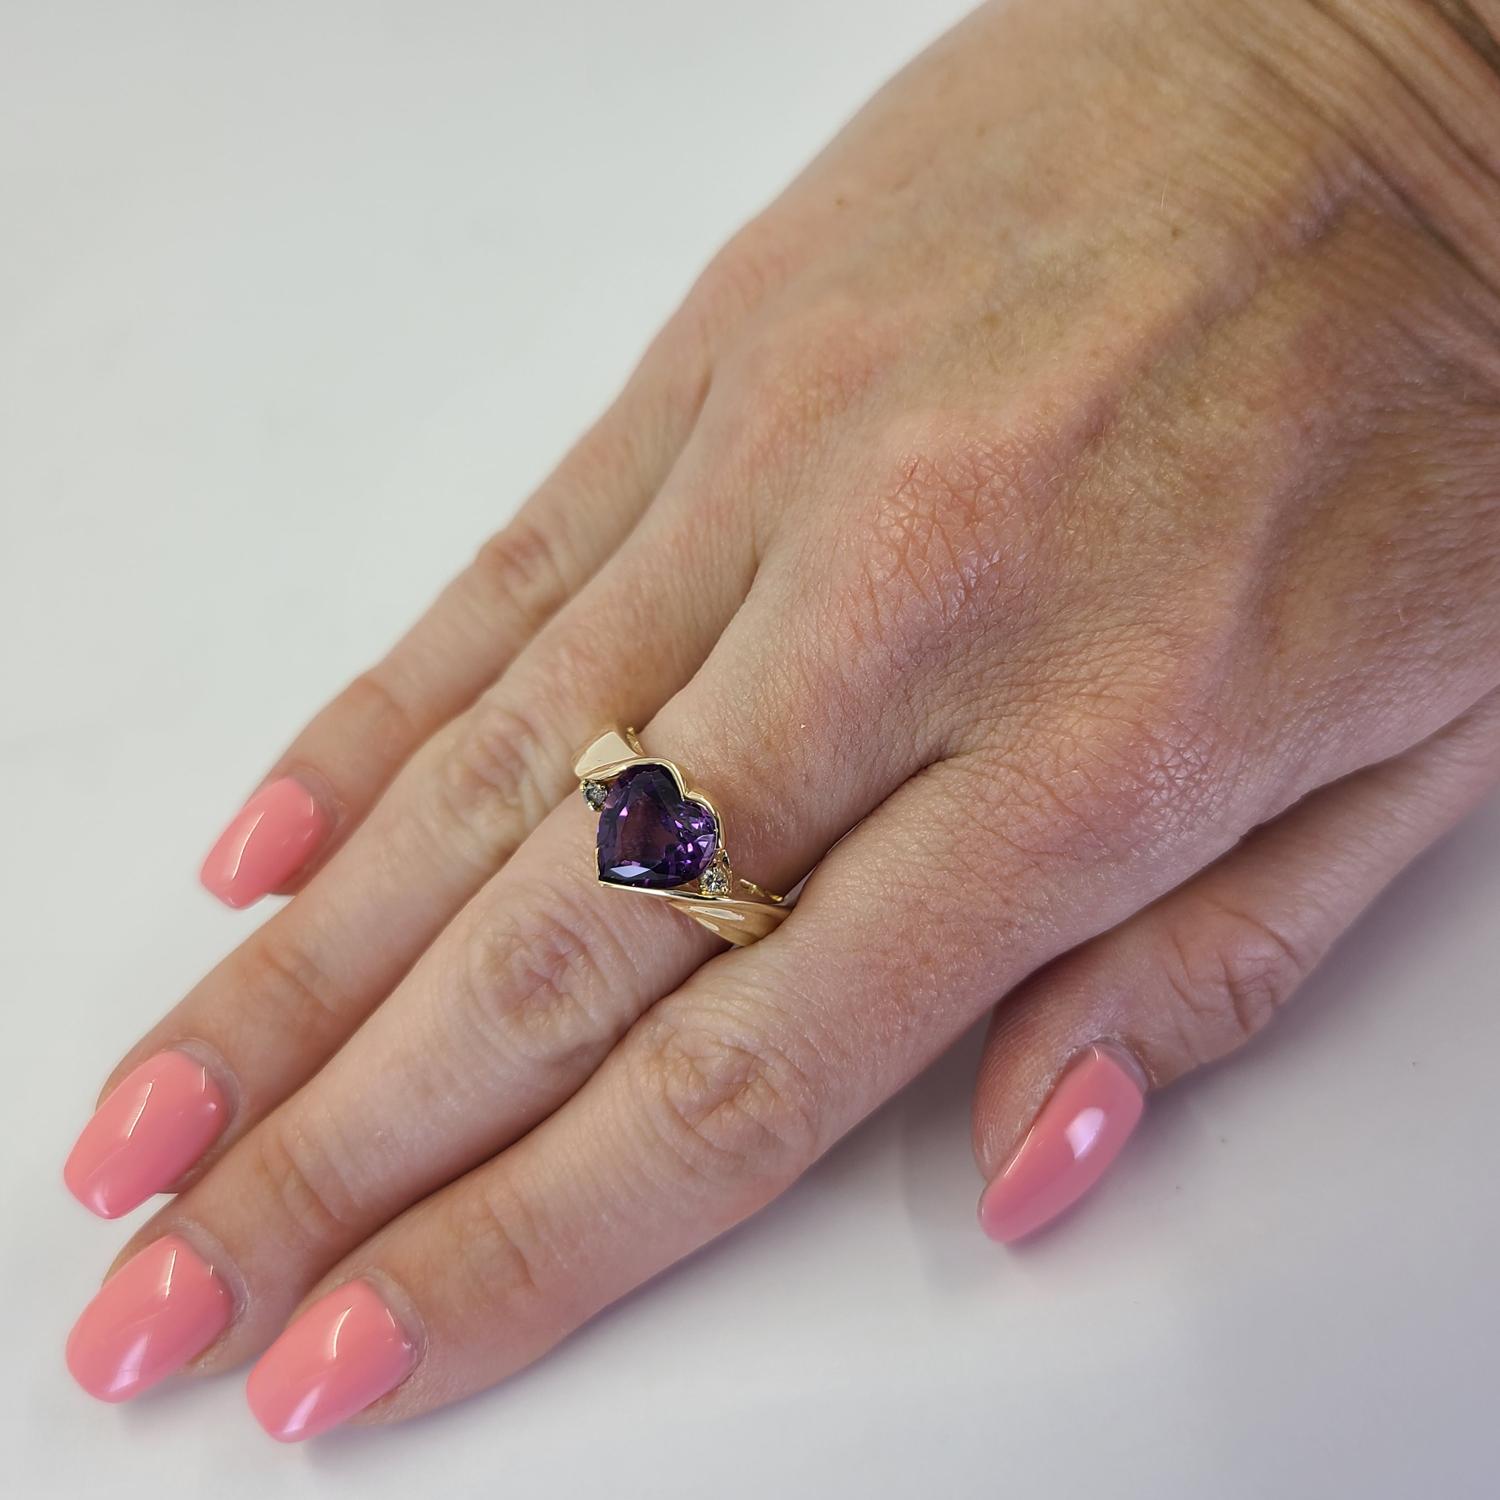 14 Karat Gelbgold Herz Ring mit einem Amethysten mit einem Gewicht von ca. 1,00 Karat, akzentuiert durch 2 runde Diamanten im Brillantschliff mit SI Reinheit und H Farbe von insgesamt 0,04 Karat. Fingergröße 7. Fertiges Gewicht ist 6,4 Gramm.